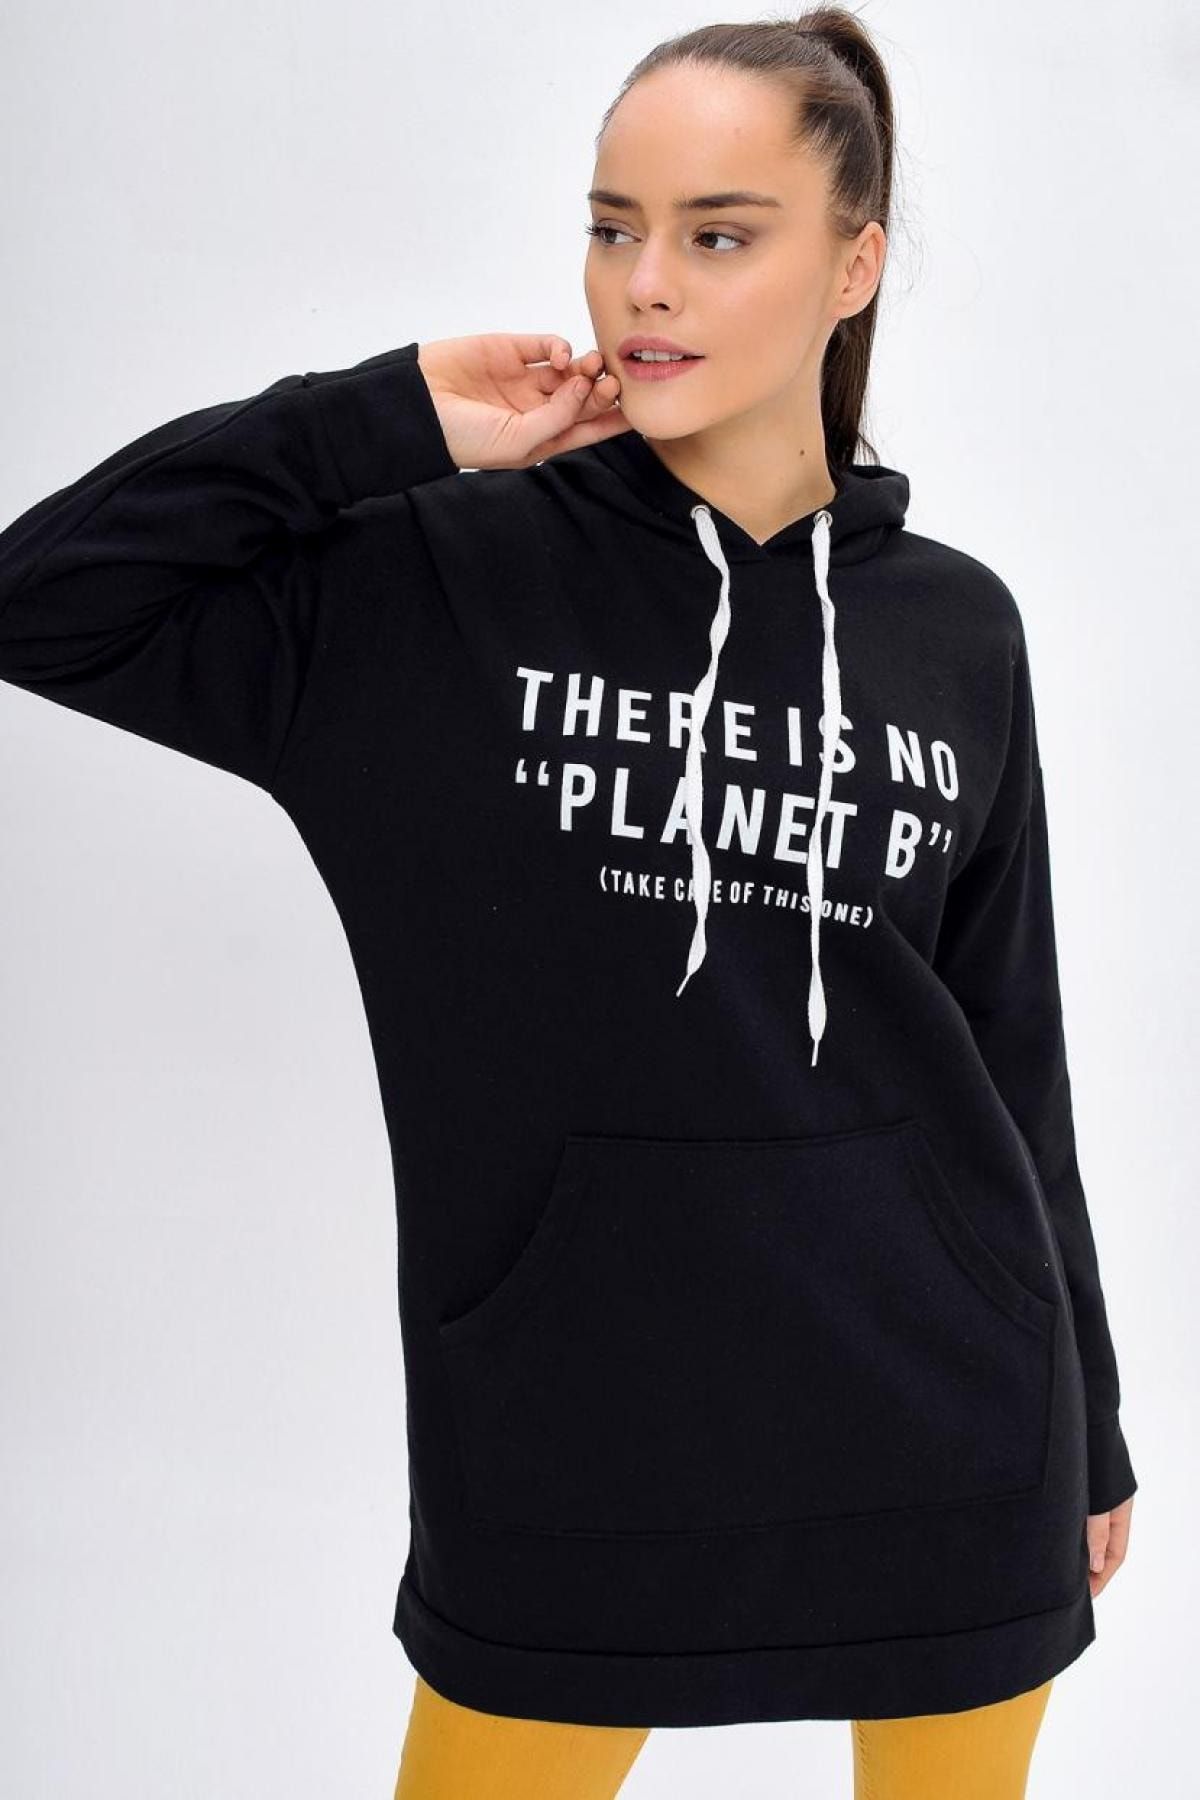 Deppoist Kadın Planet Baskılı Sweatshirt Tunik